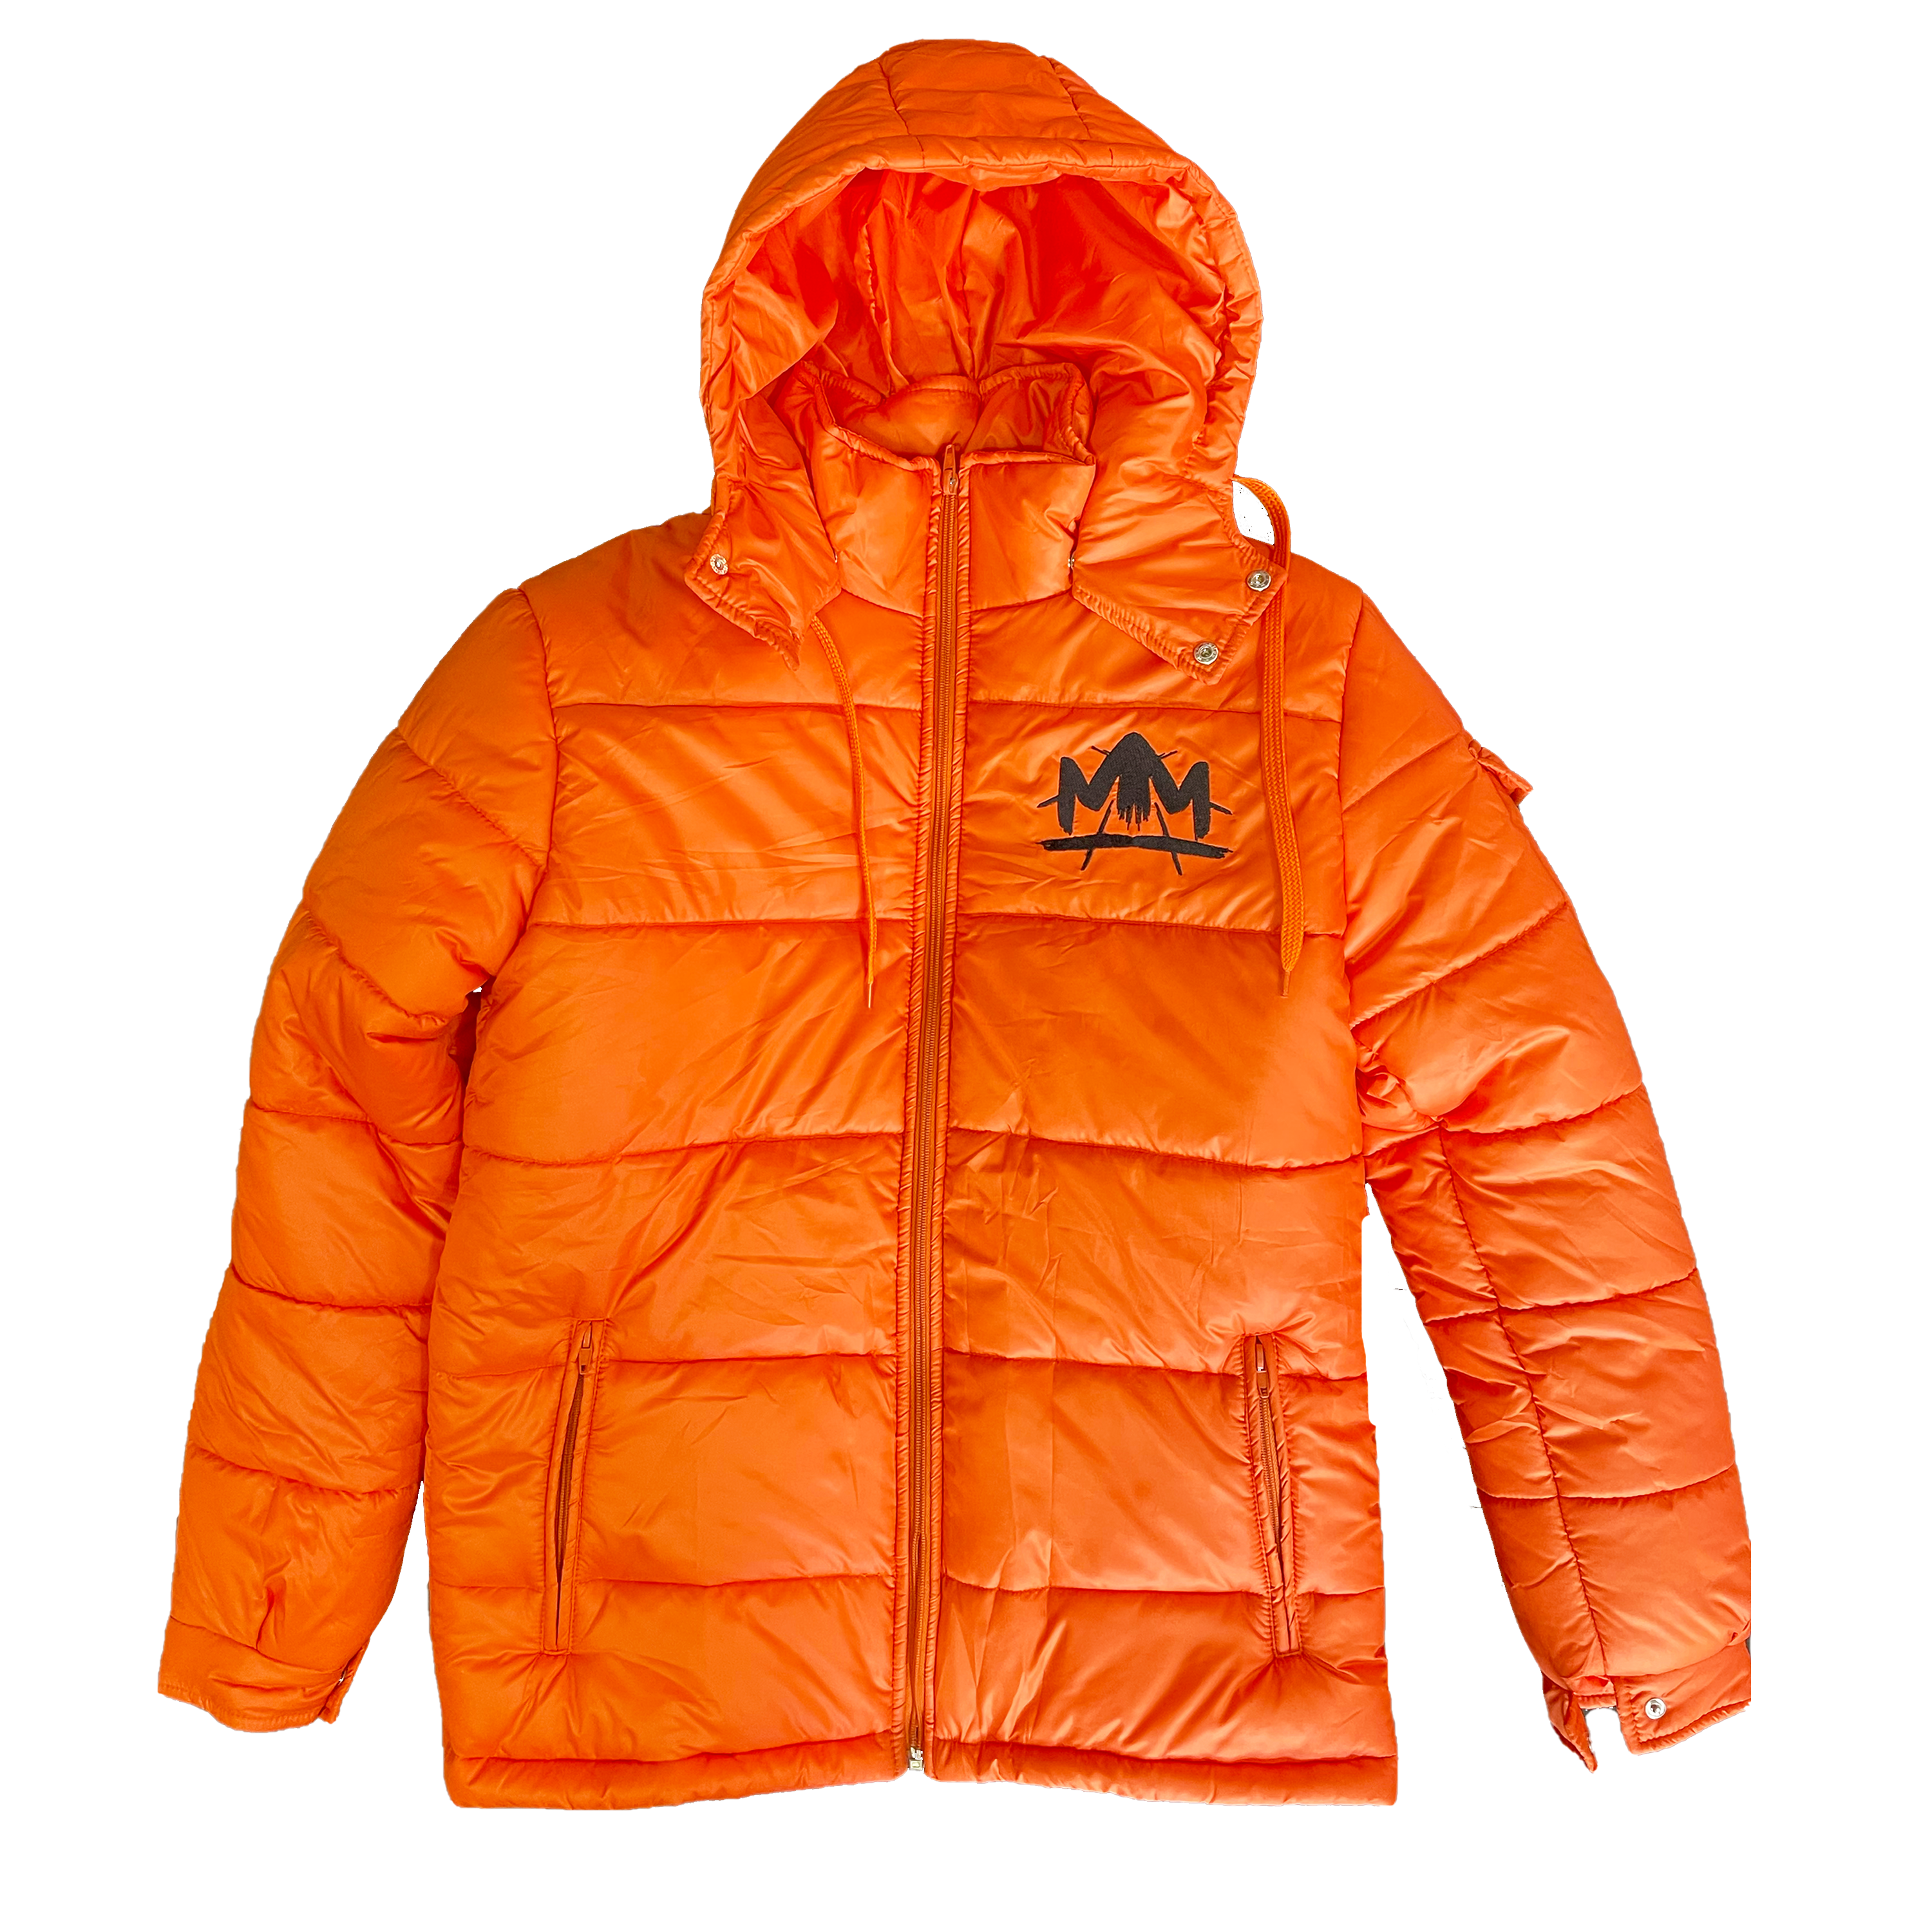 MM Puffer Jacket [Orange] - Signedbymcfly